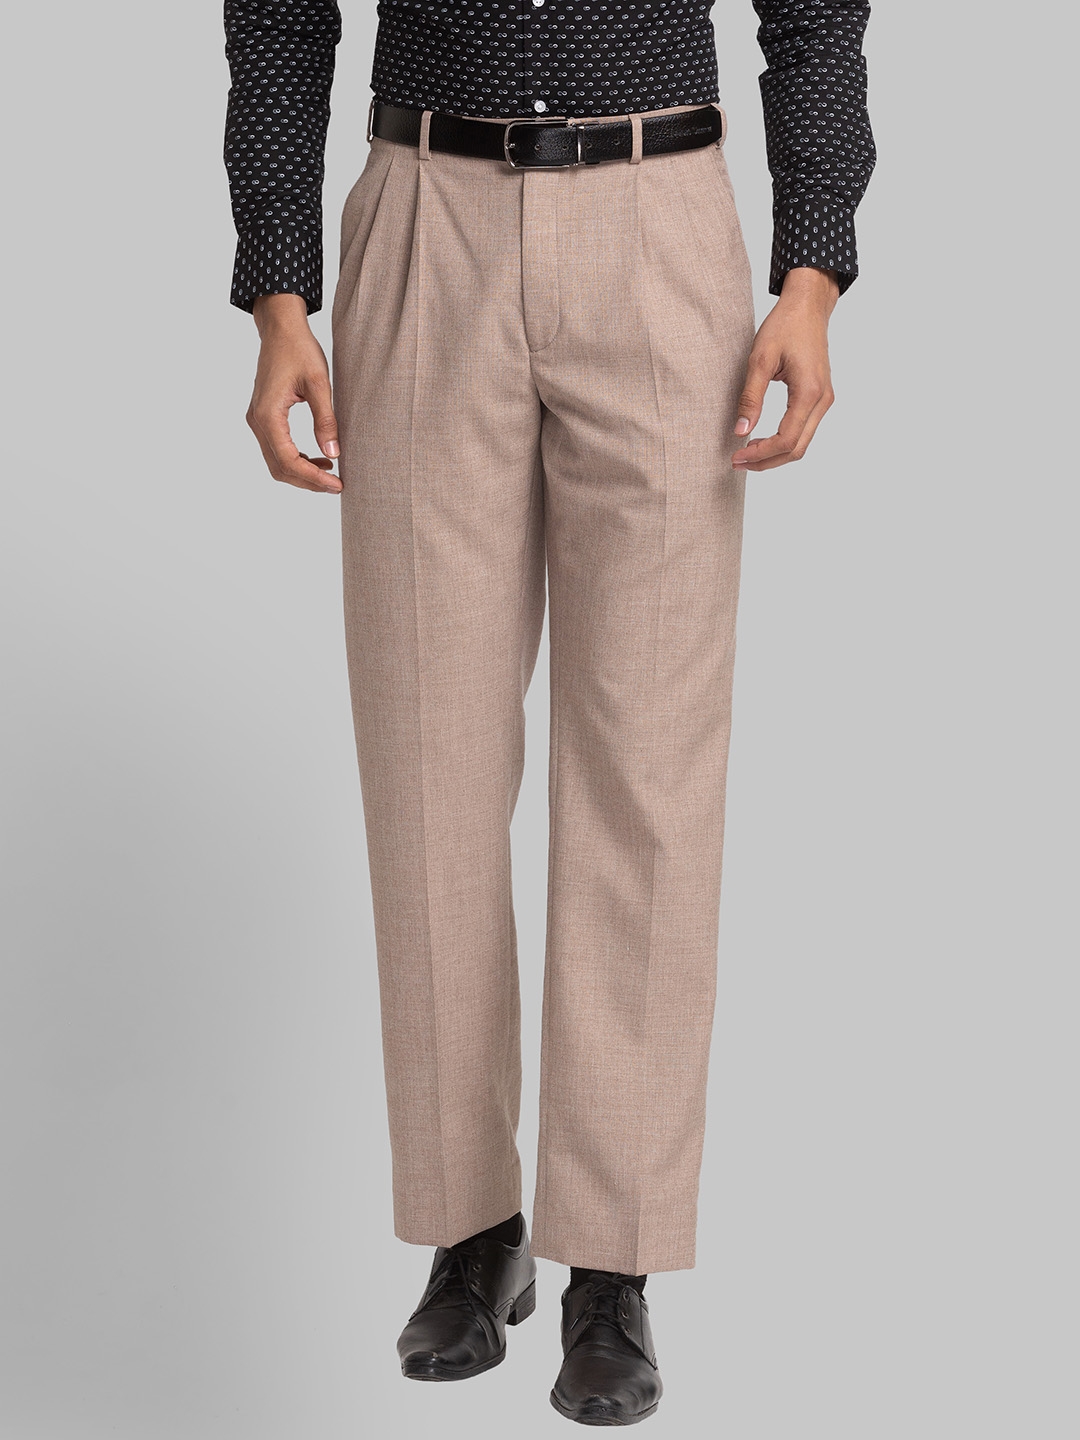 Buy Cream Trousers & Pants for Men by PARK AVENUE Online | Ajio.com